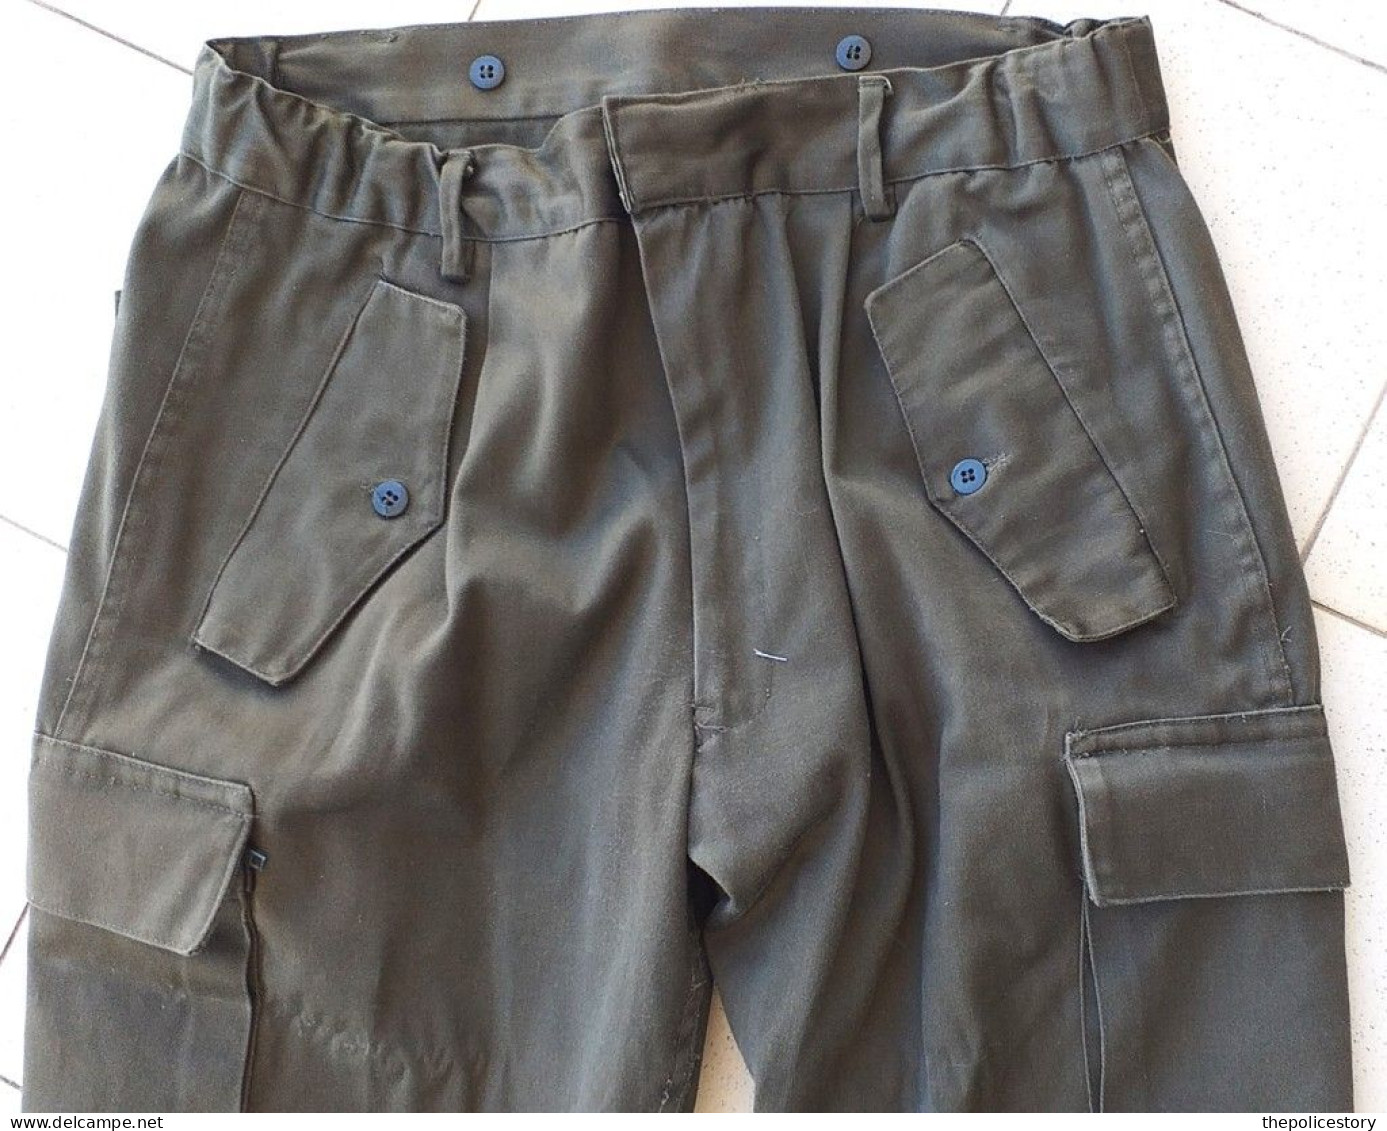 Giacca pantaloni mod. sperimentale S.Uff. E.I. del 1990 ottimi marcati originali